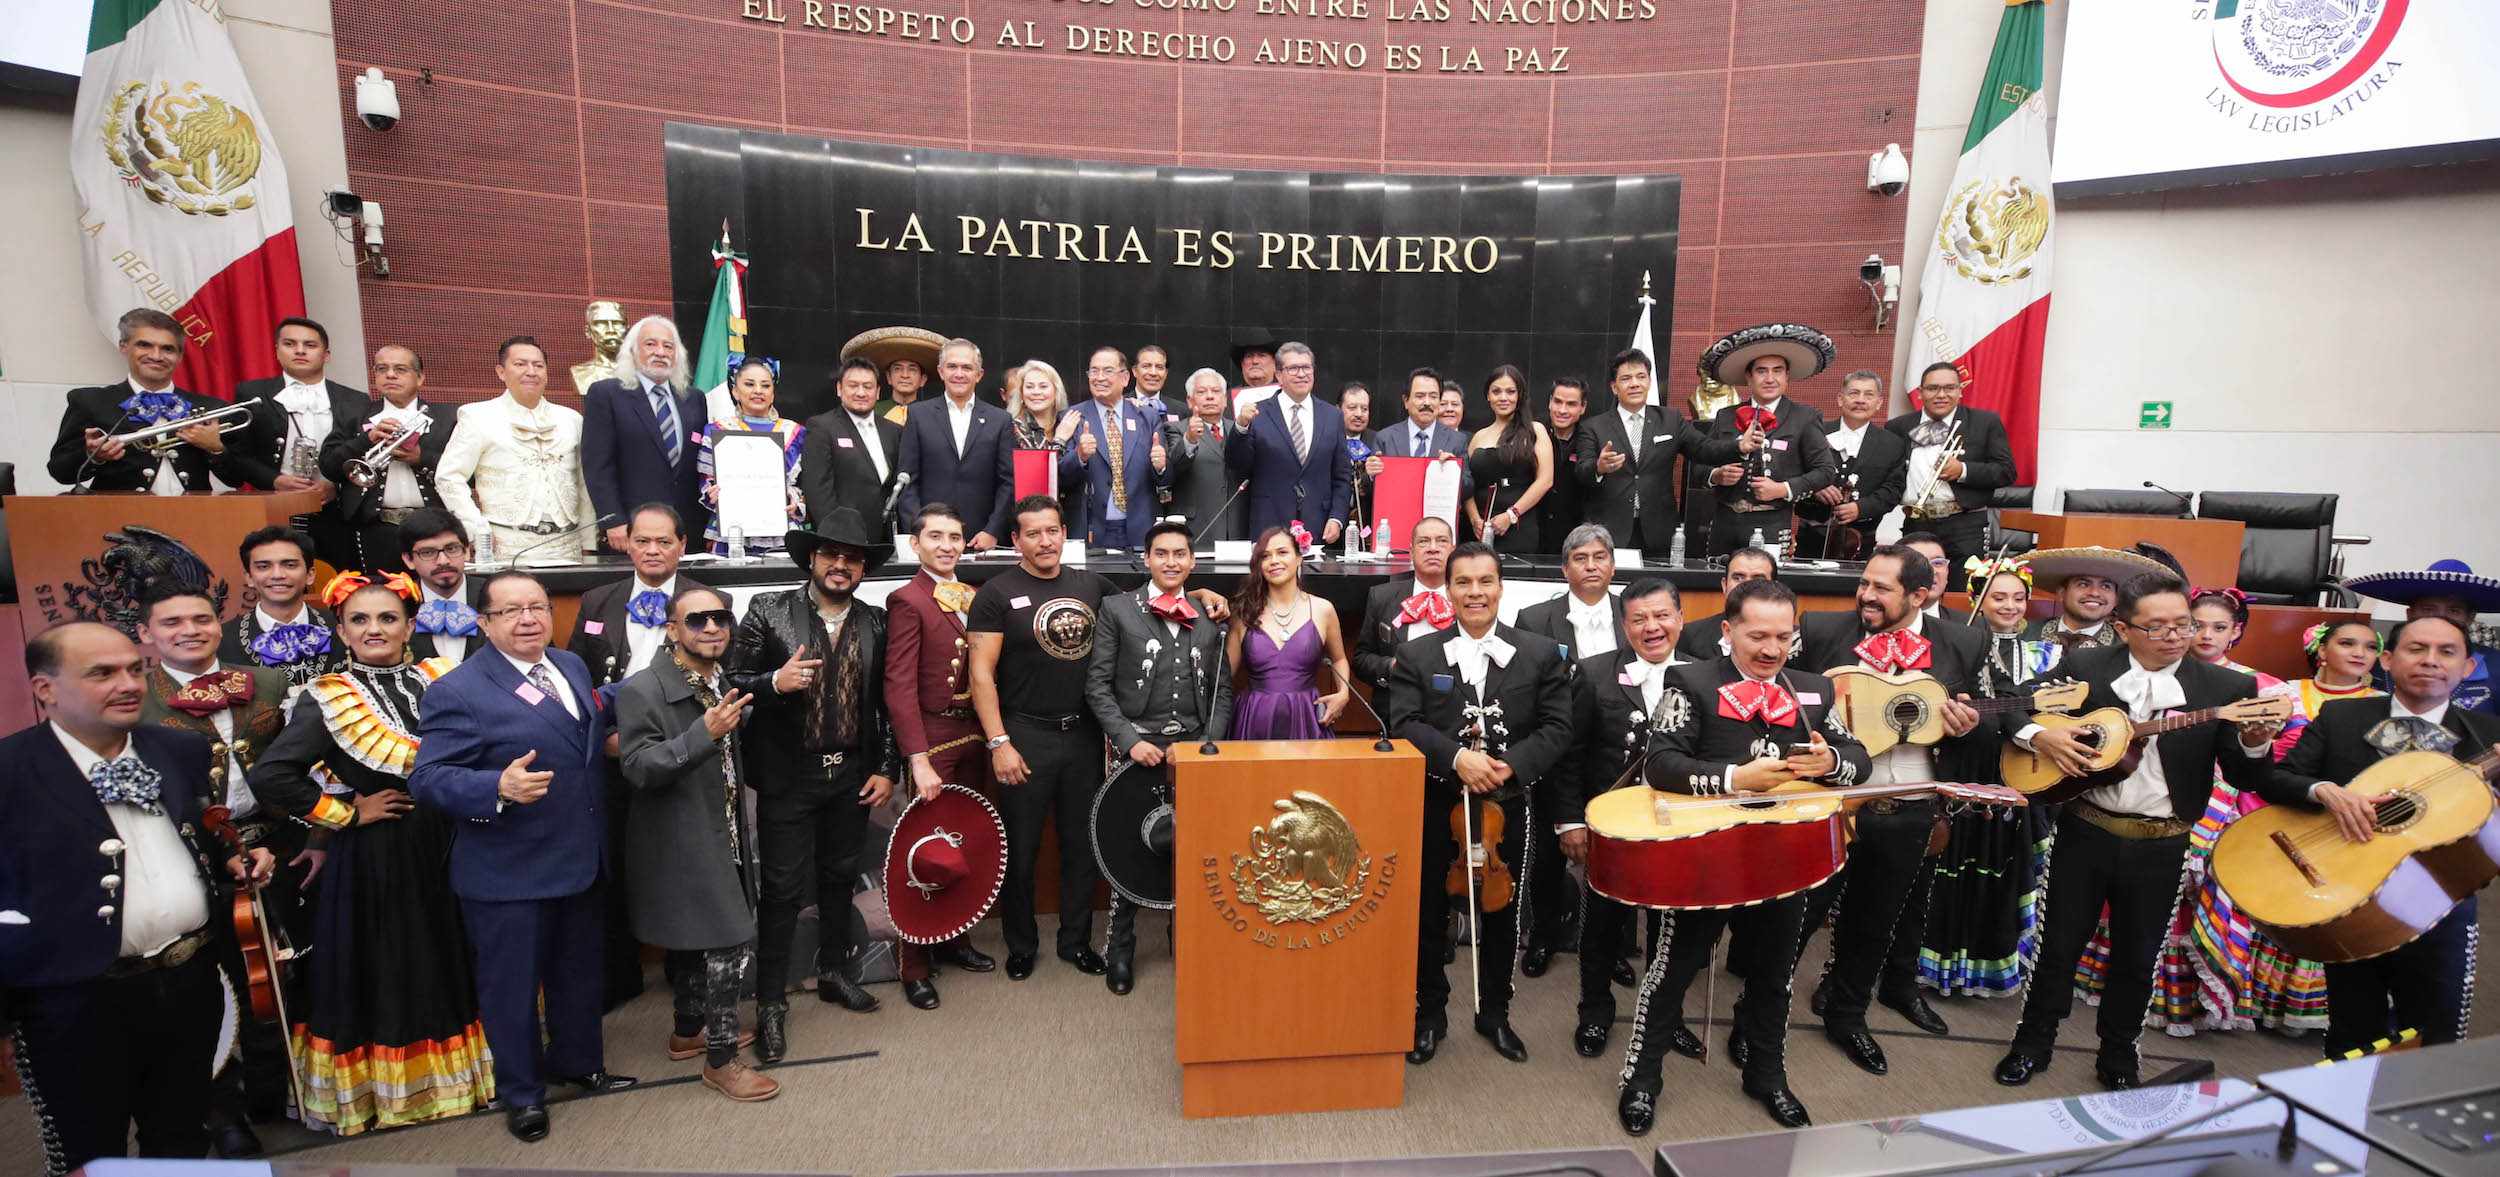 Reconoce Senado trayectoria artística de músicos y mariachis mexicanos